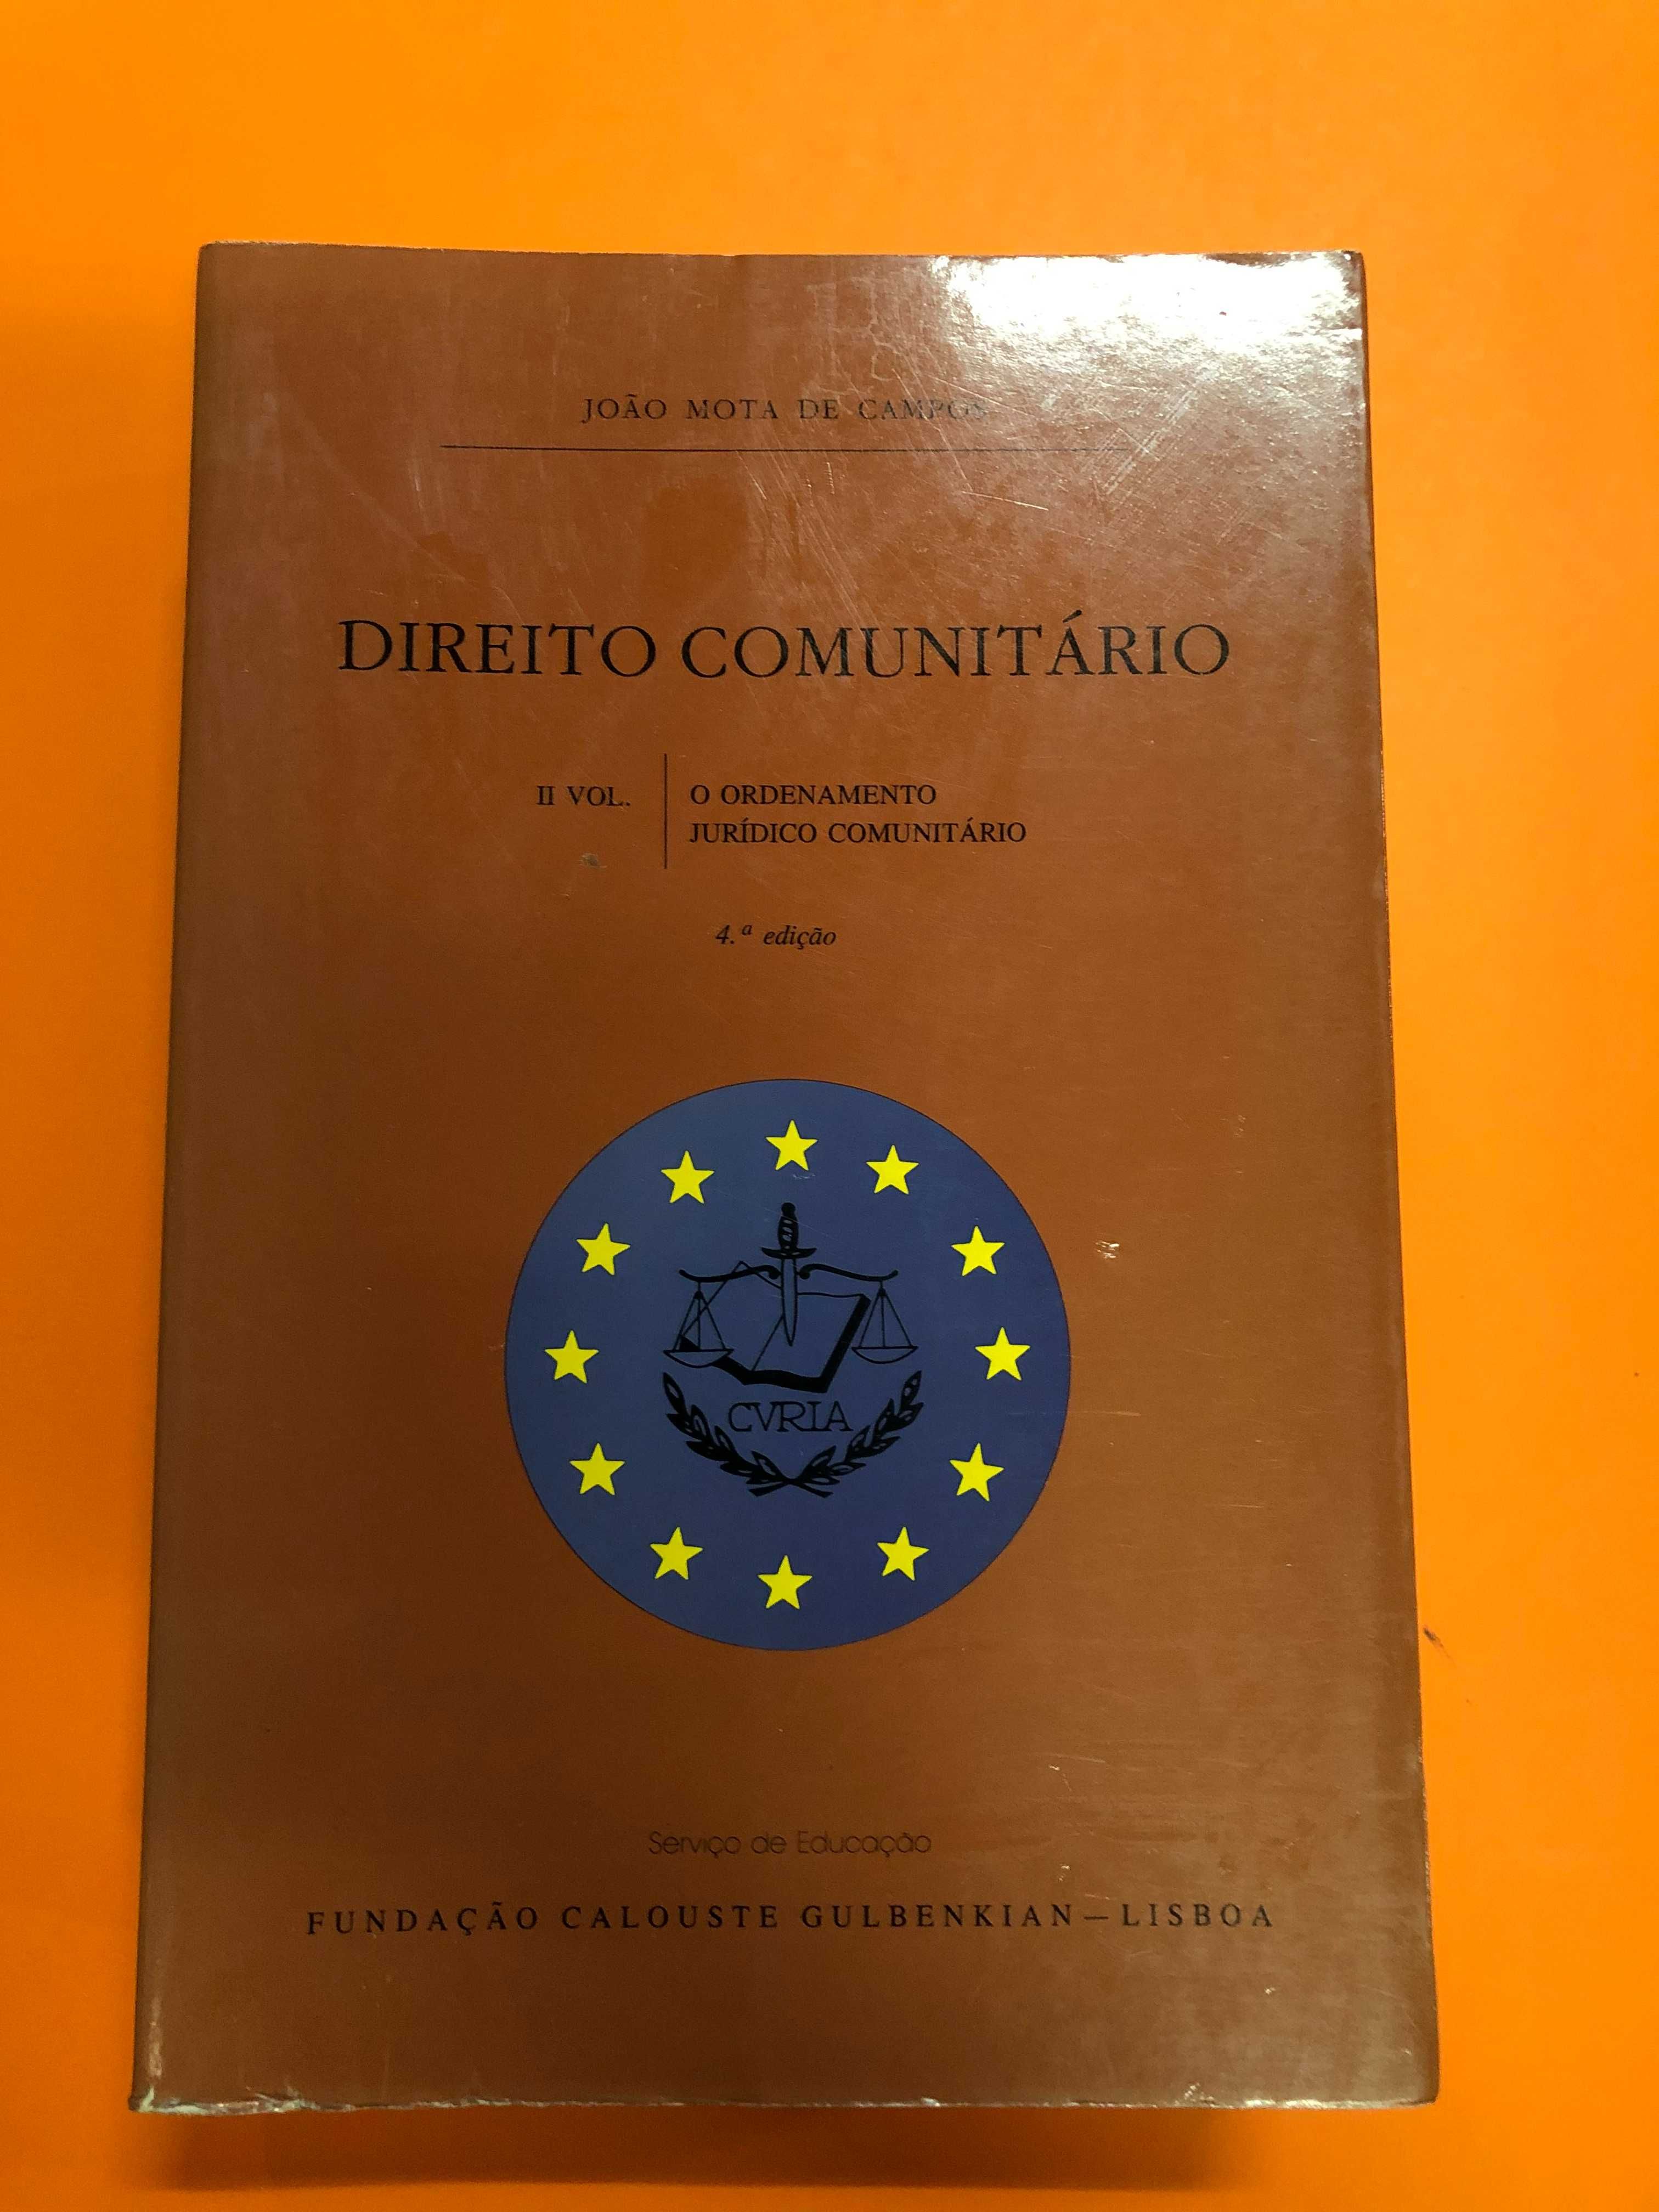 Direito comunitário II Vol. - João Mota de Campos